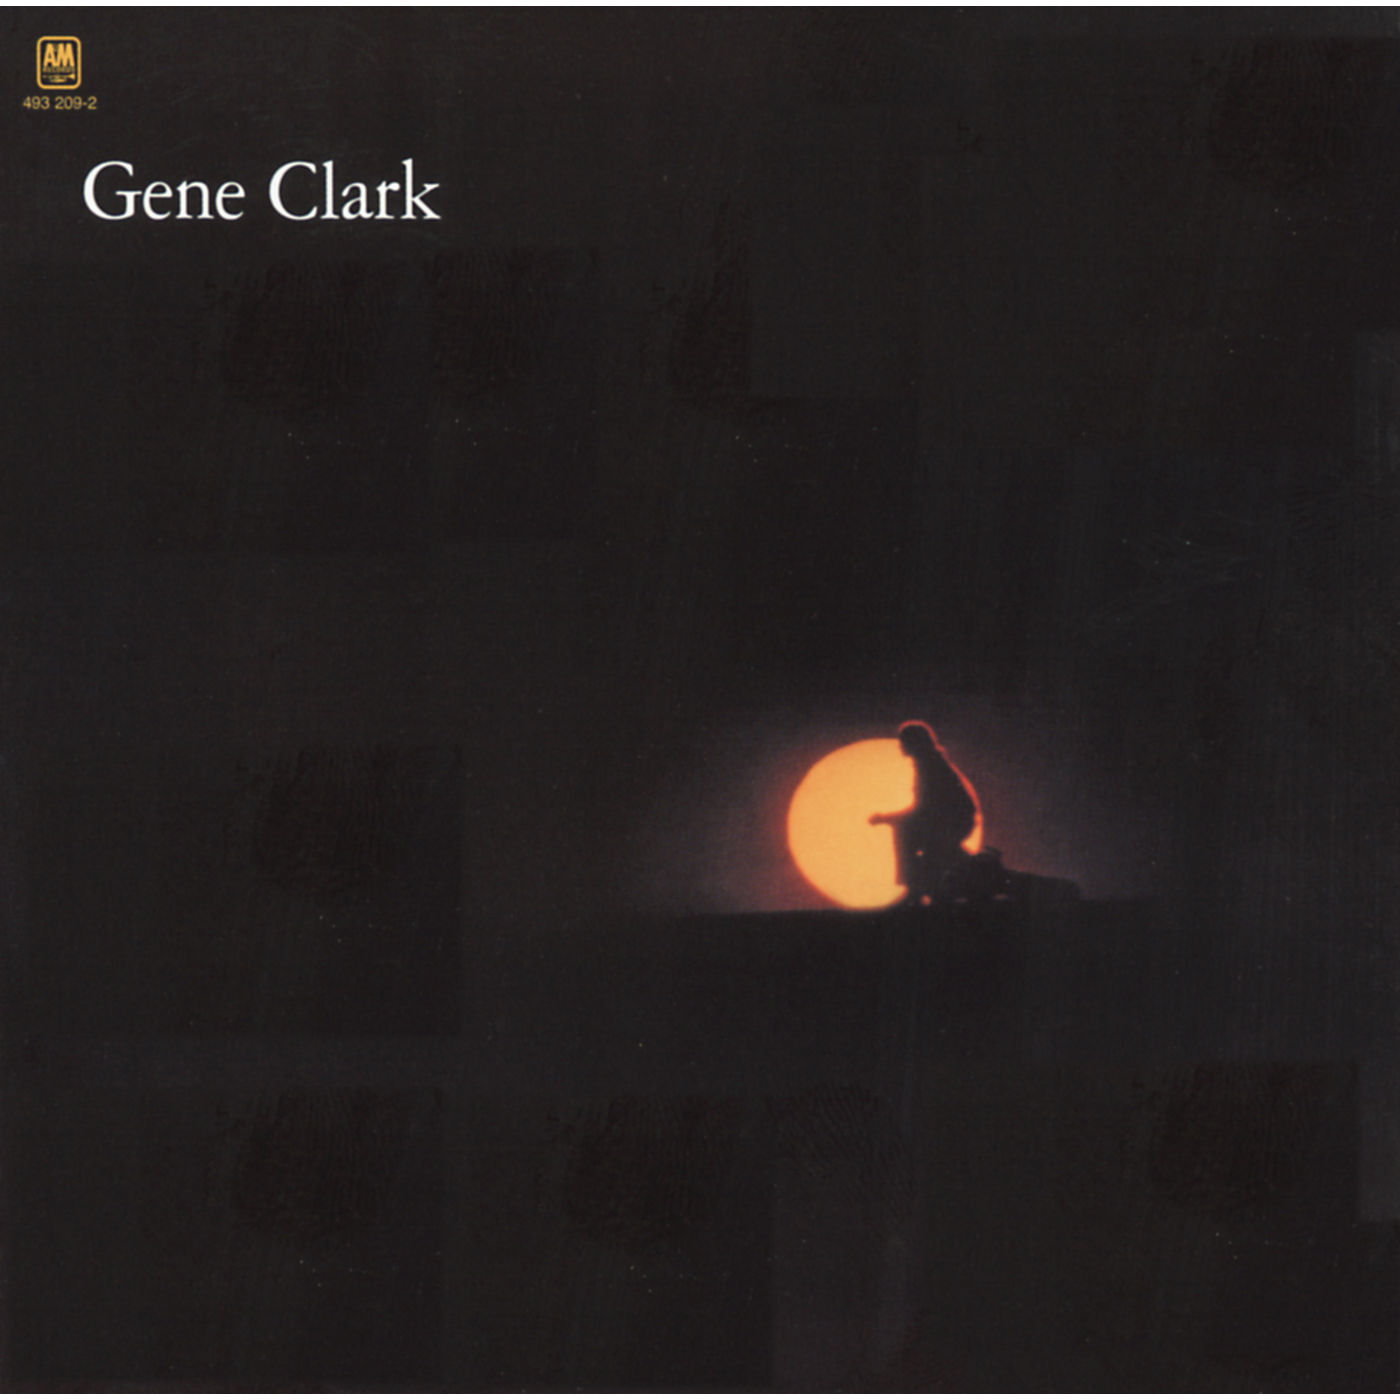 Gene Clark - White Light (1972/2021) [FLAC 24bit/96kHz]